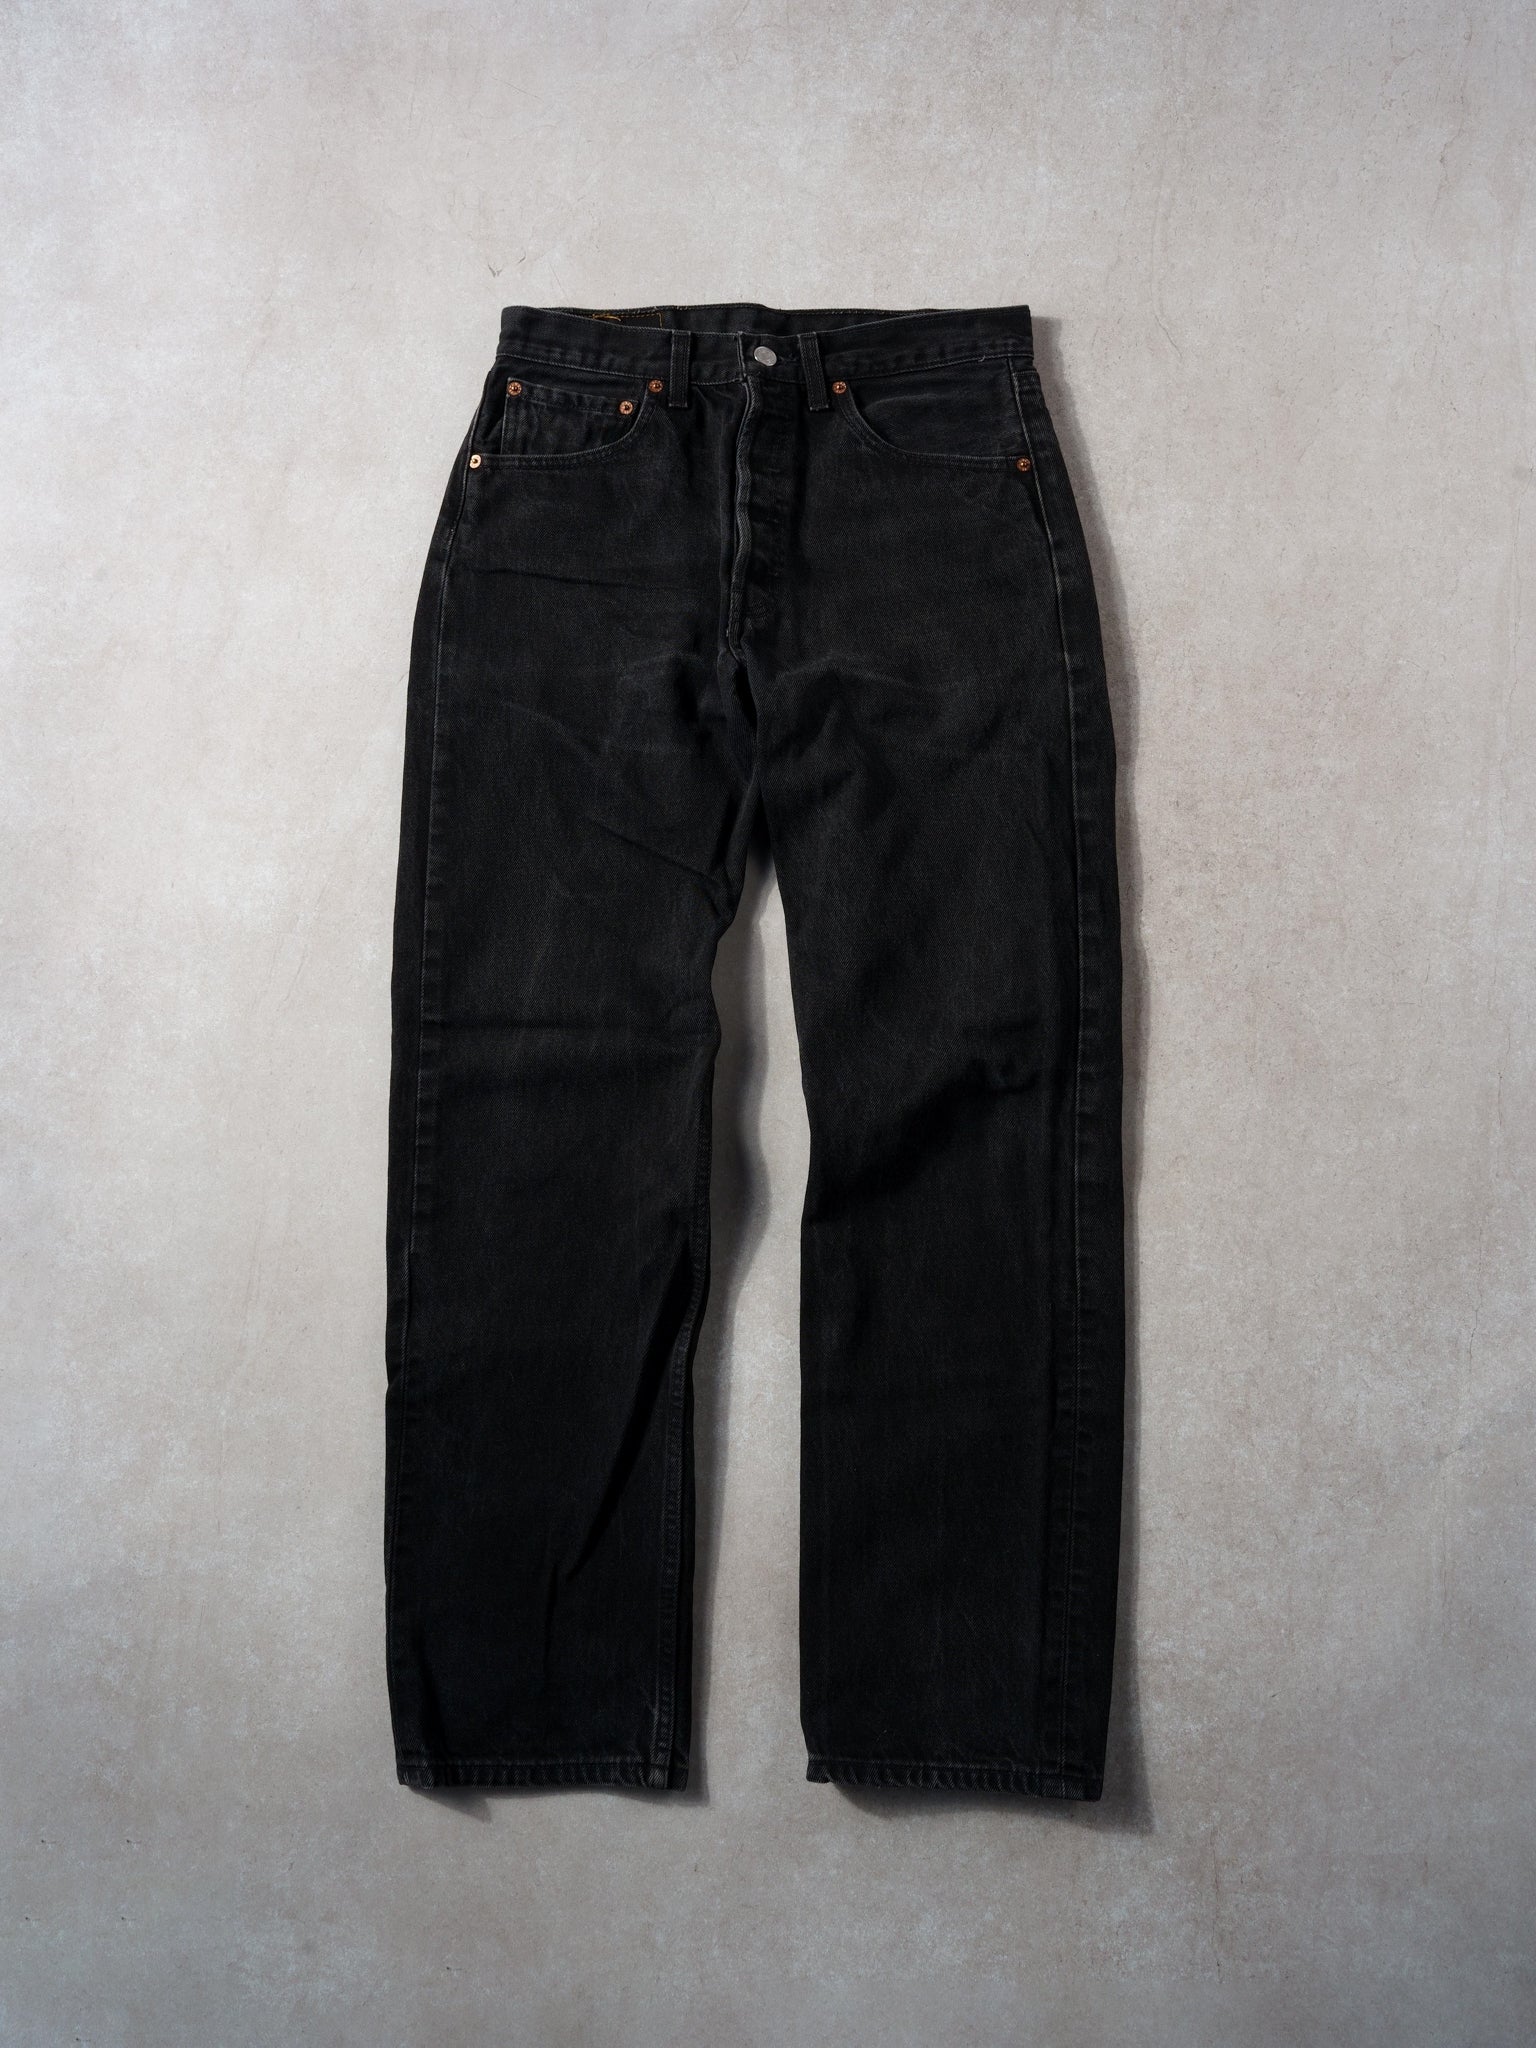 Vintage 90s Black Levi's 501 Denim Jeans (30x30)